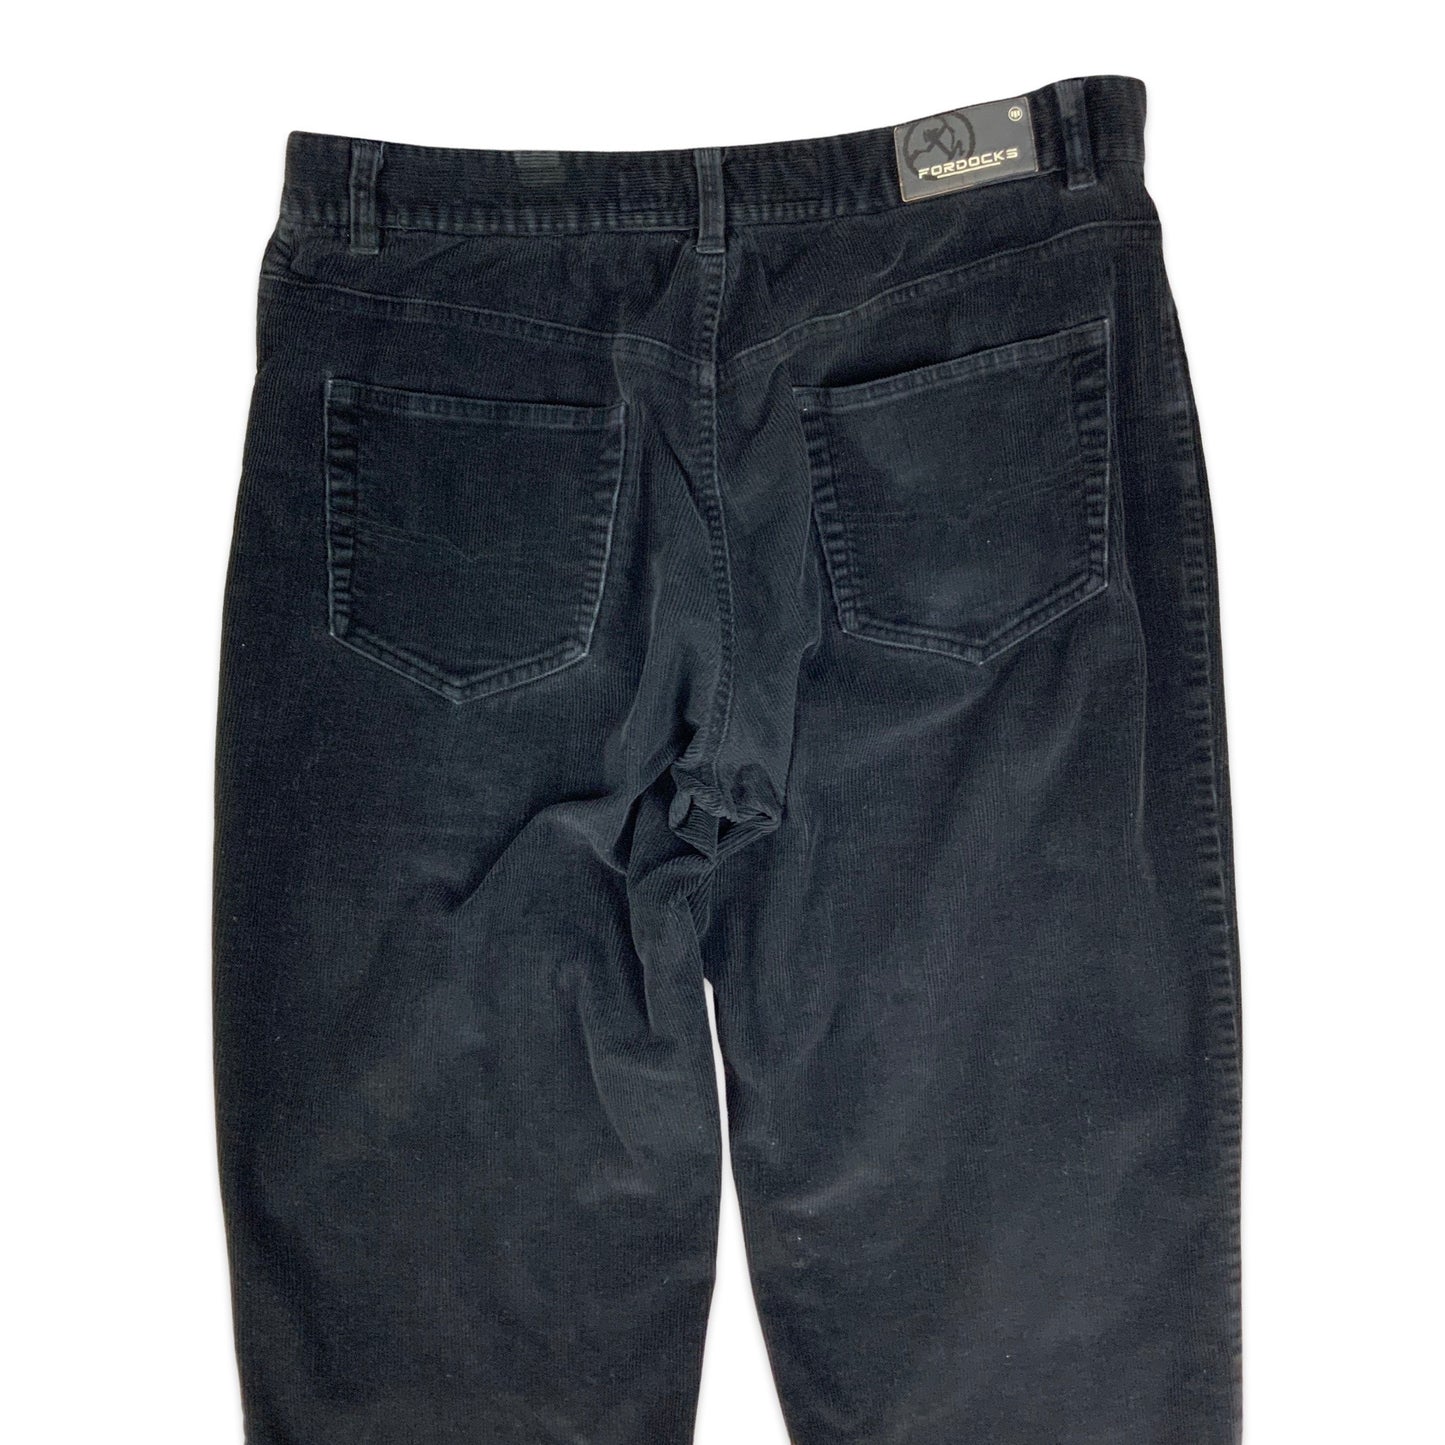 Vintage Black Corduroy Trousers 36W 29L